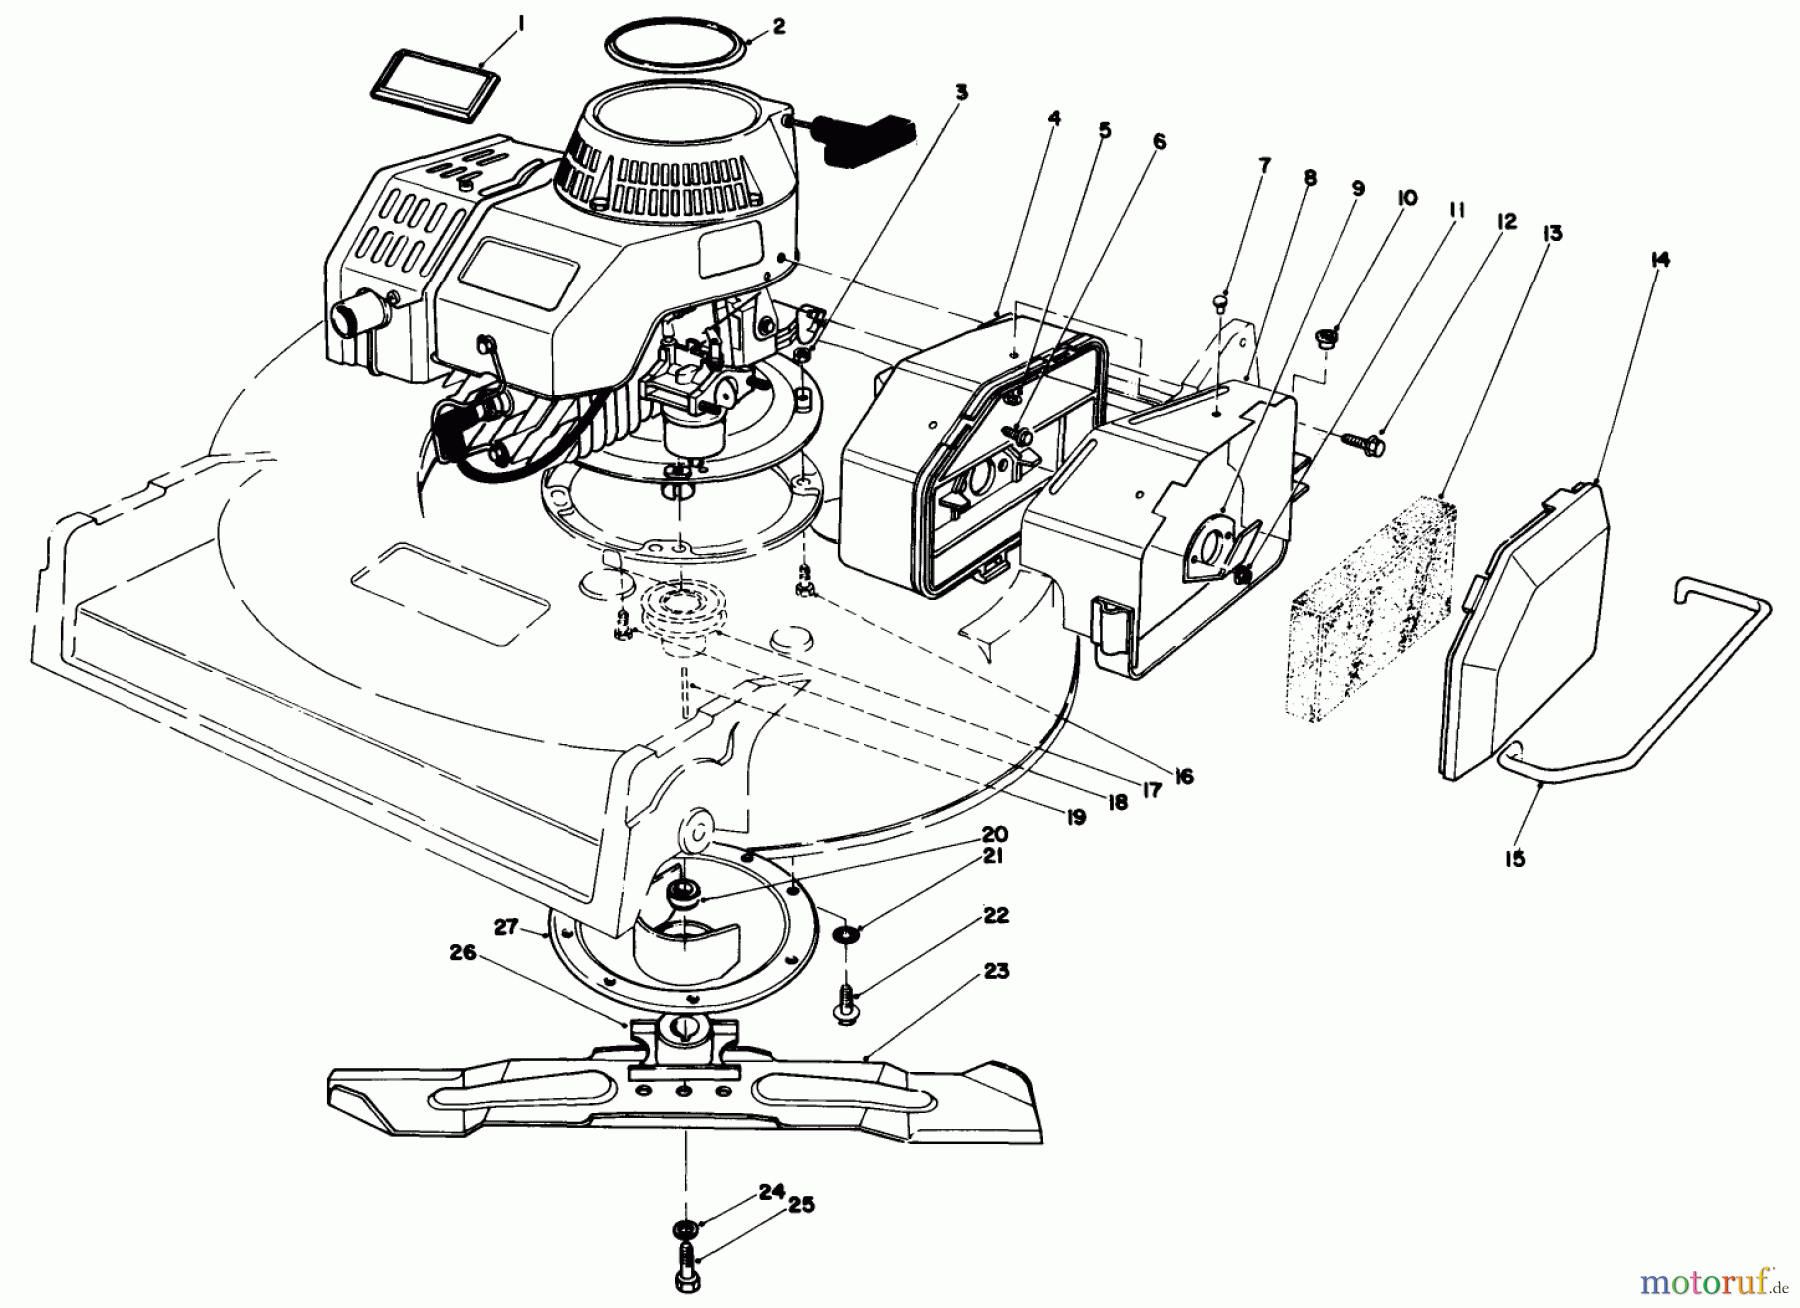  Toro Neu Mowers, Walk-Behind Seite 2 22035 - Toro Lawnmower, 1988 (8002990-8999999) ENGINE ASSEMBLY (MODEL 22035)